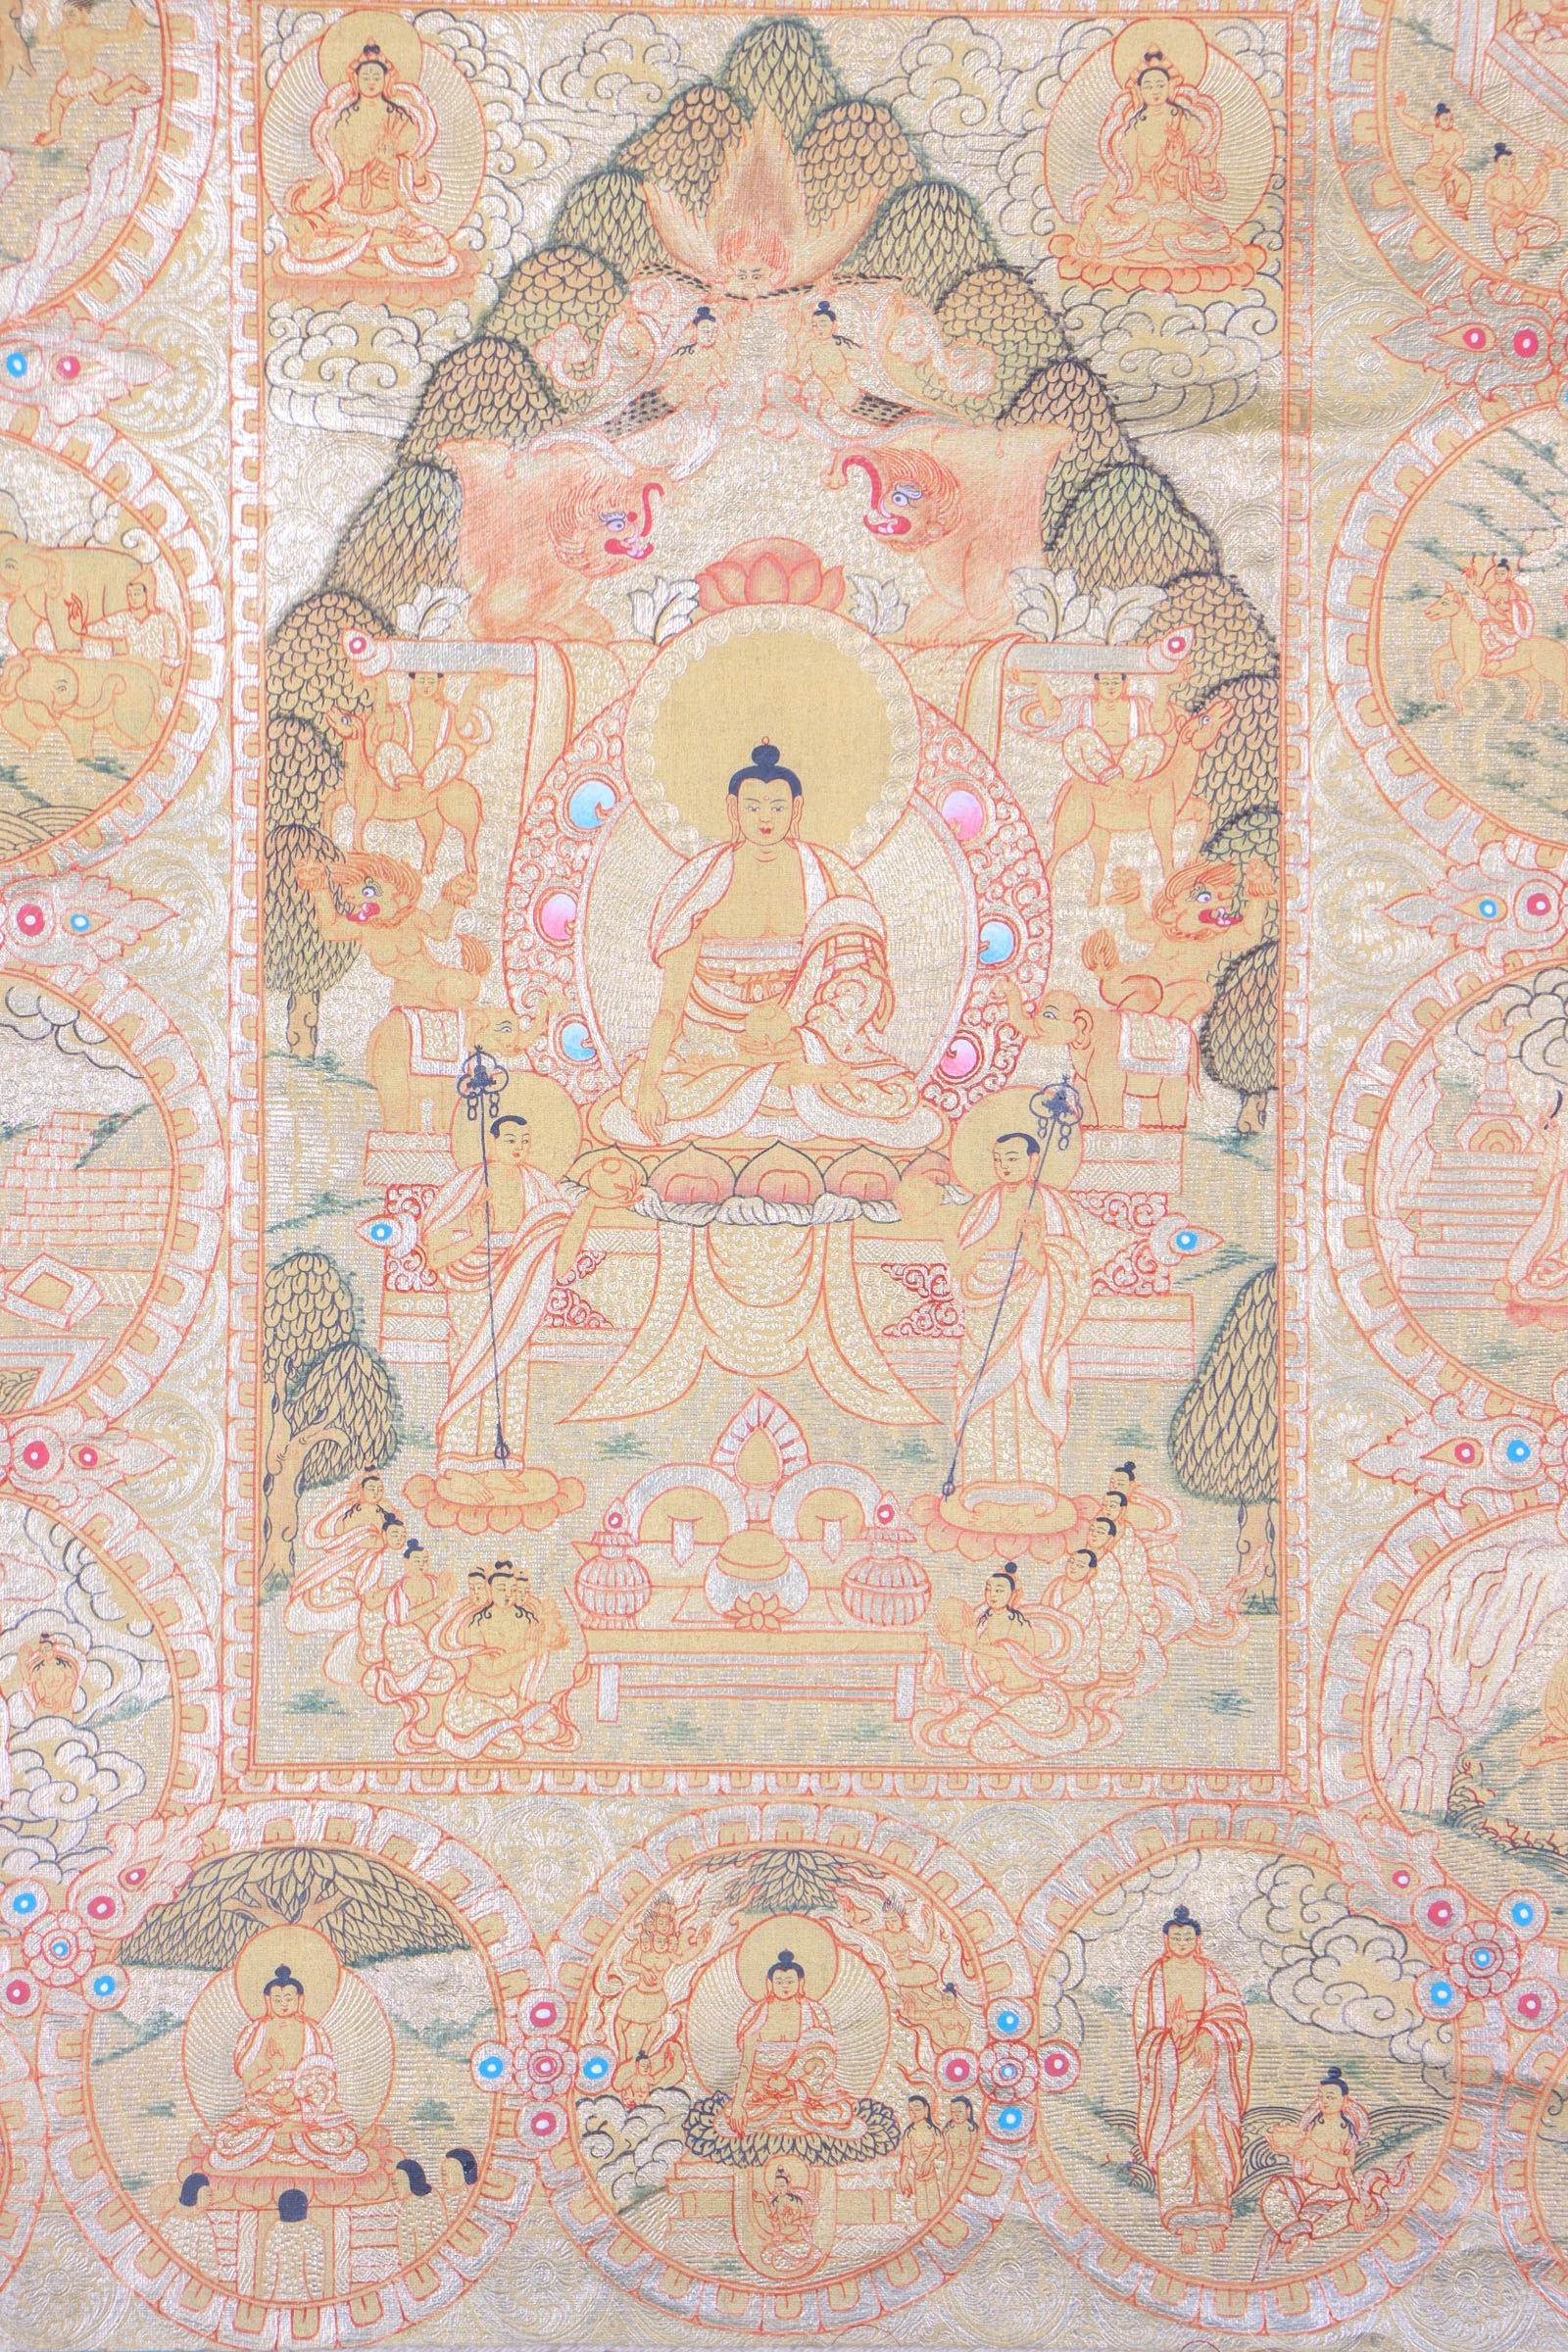 Shakyamuni Buddha Thangka Painting for meditation and reflection on the teachings of Shakyamuni Buddha.